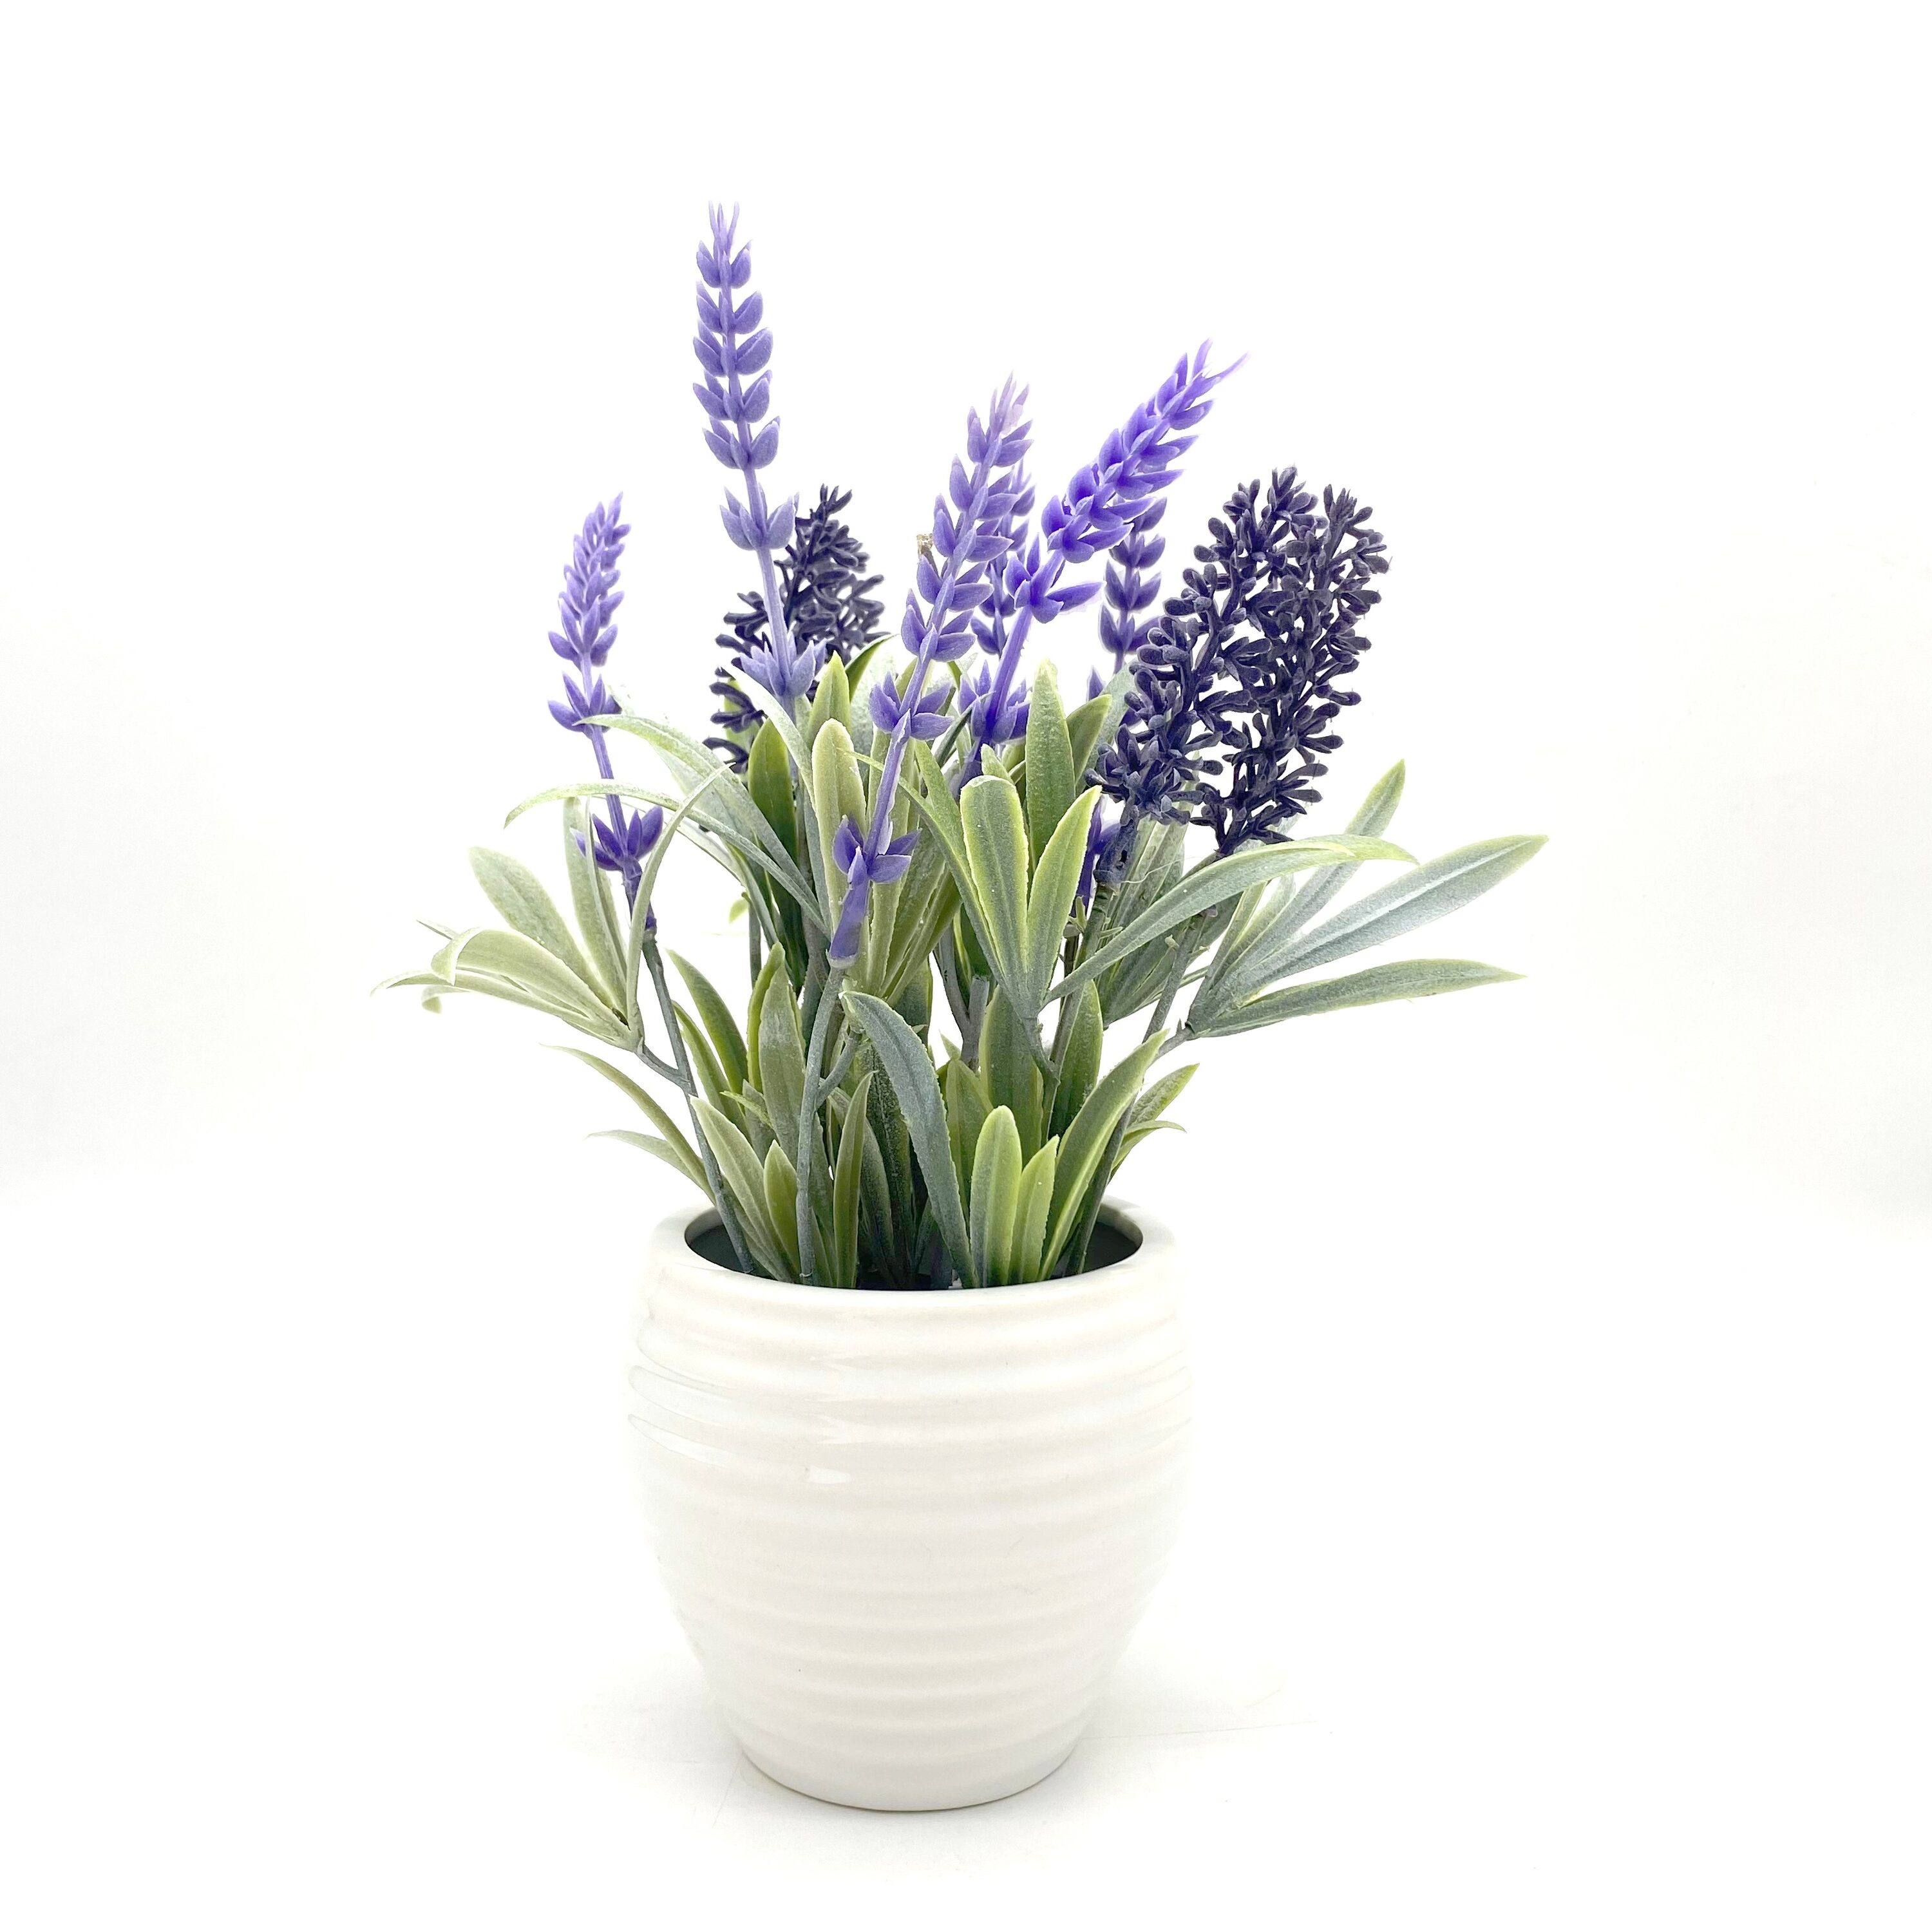 Ferrisland Fake Plants 2 Pcs Artificial Lavender Plants for Home